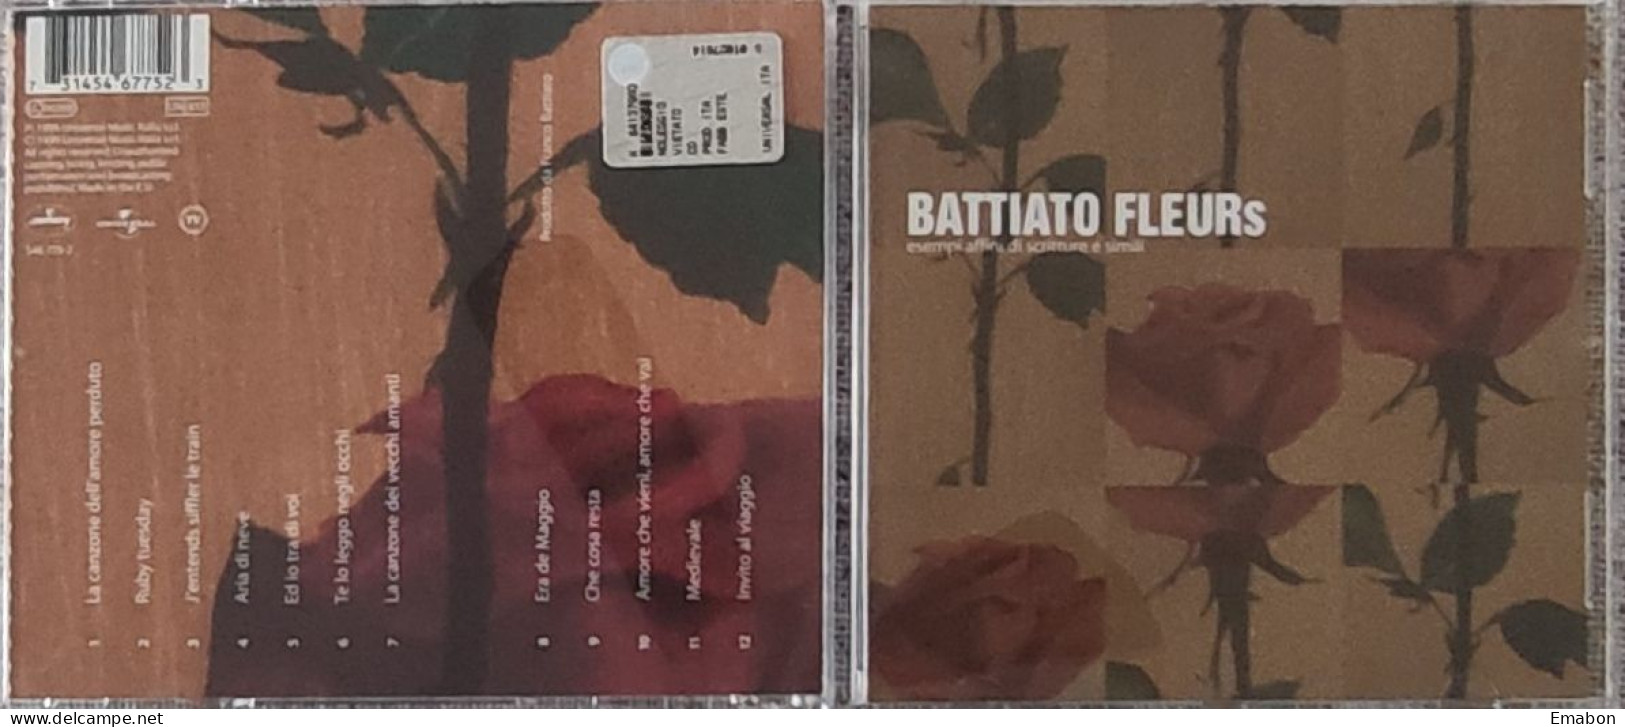 BORGATTA -  Cd  FRANCO BATTIATO   - FLEURS  - UNIVERSAL MUSIC  1999  -  USATO In Buono Stato - Autres - Musique Italienne